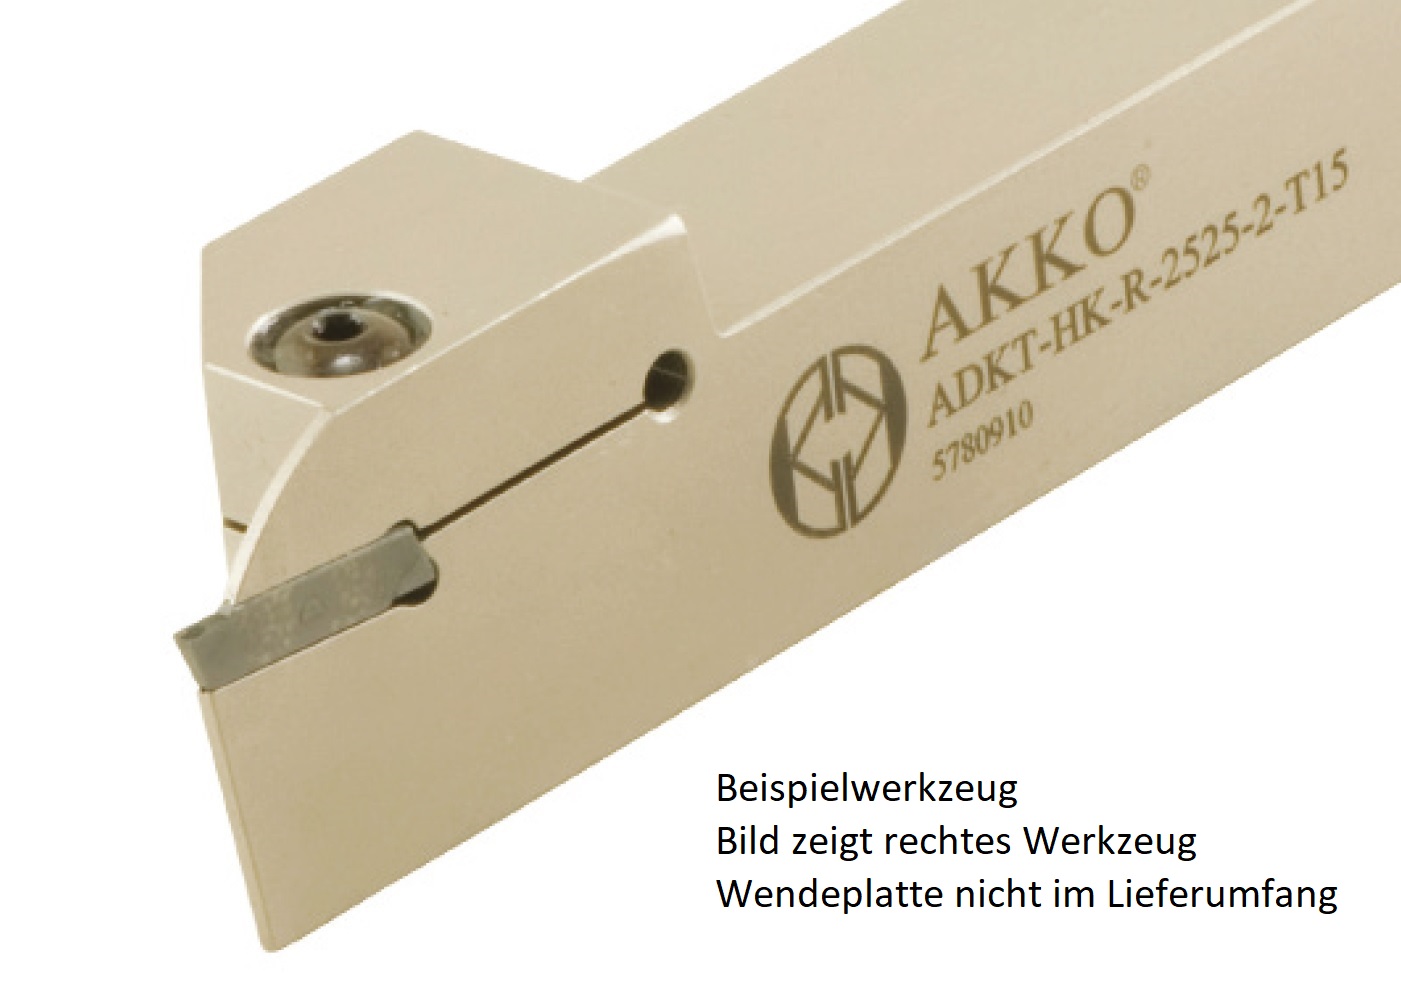 Abstechhalter ADKT-HK-L-2525-4-T22